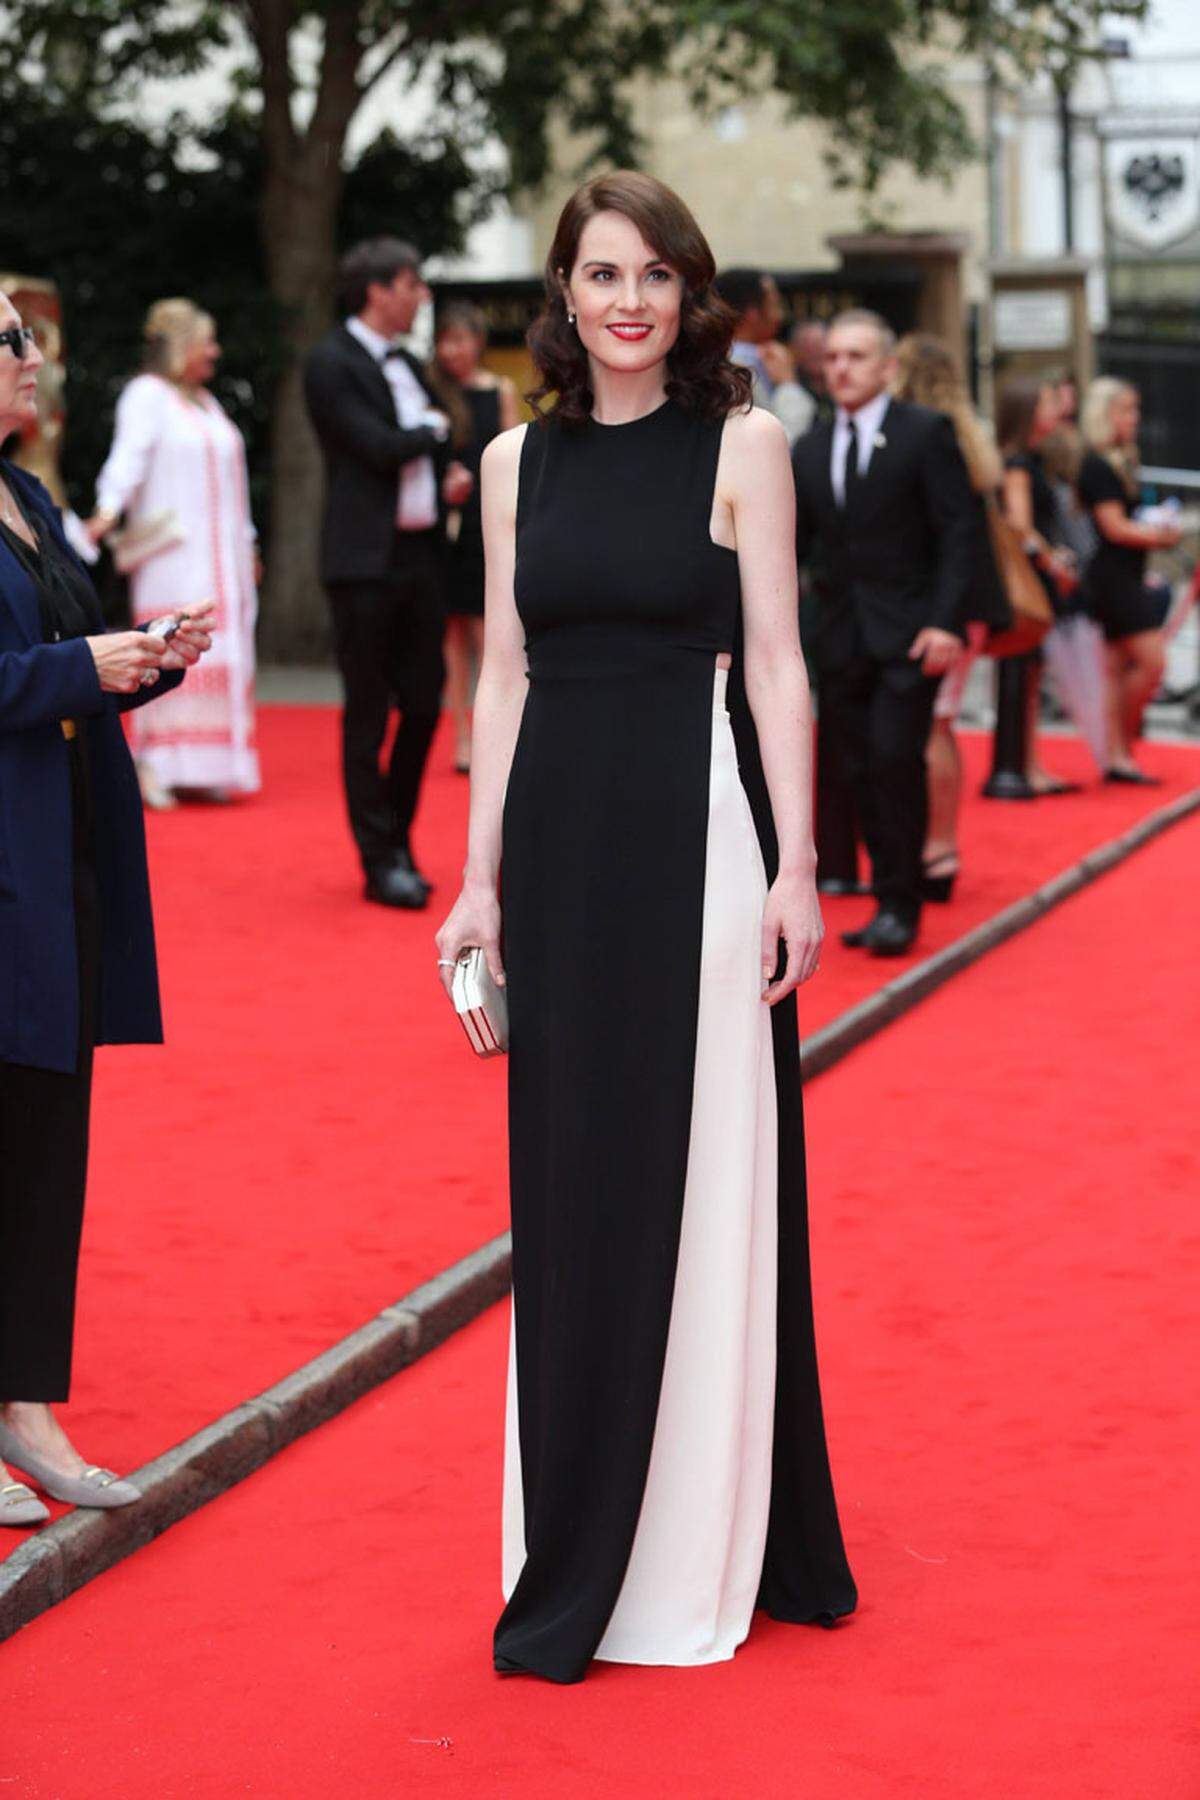 Die TV-Serie Downton Abbey wurde von der British Academy of Film and Television Arts (BAFTA) in London für die außerordentliche Leistung in Großbritannien und weltweit geehrt. Die Stars der Show, etwa Michelle Dockery (in Valentino), zeigten sich auf dem roten Teppich des Richamond Theatre von ihrer glamourösen Seite.